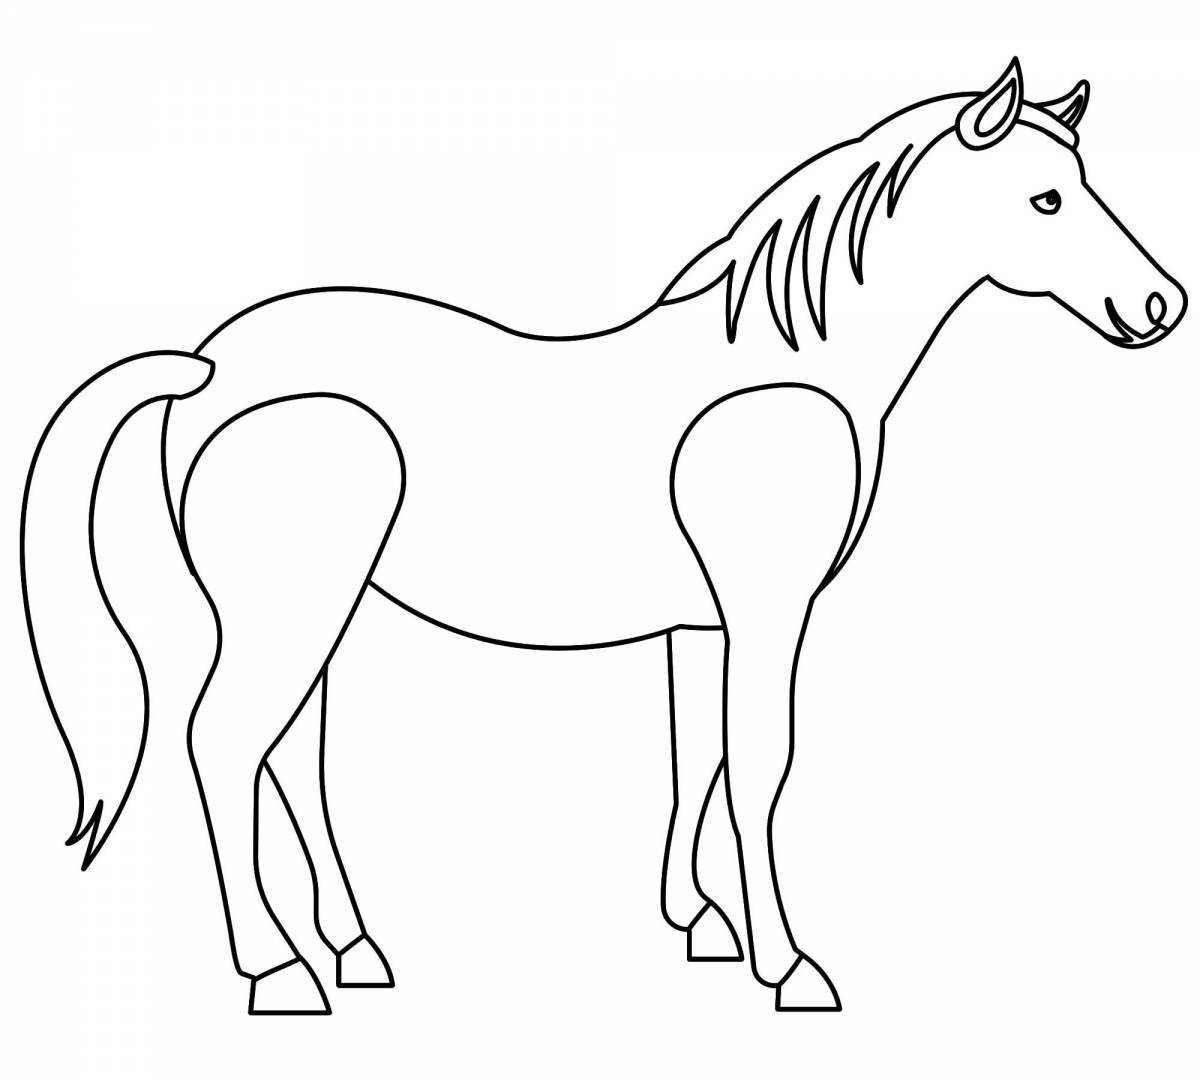 Раскраска элегантная лошадь для детей 2-3 лет